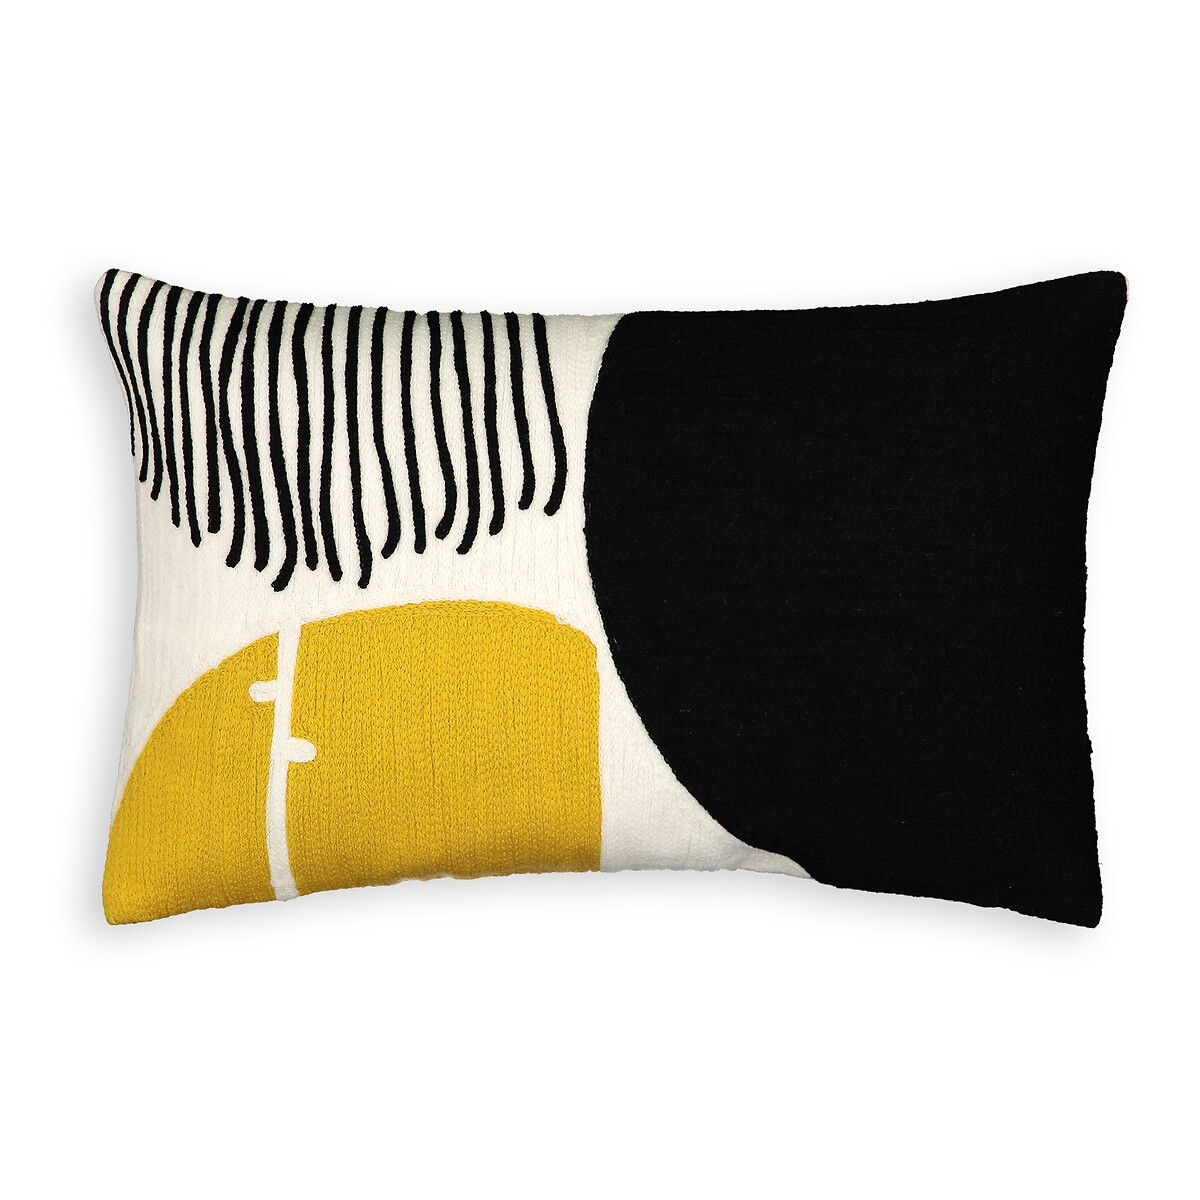 Чехол LaRedoute На подушку с вышивкой  Mihna 50 x 30 см желтый, размер 50 x 30 см